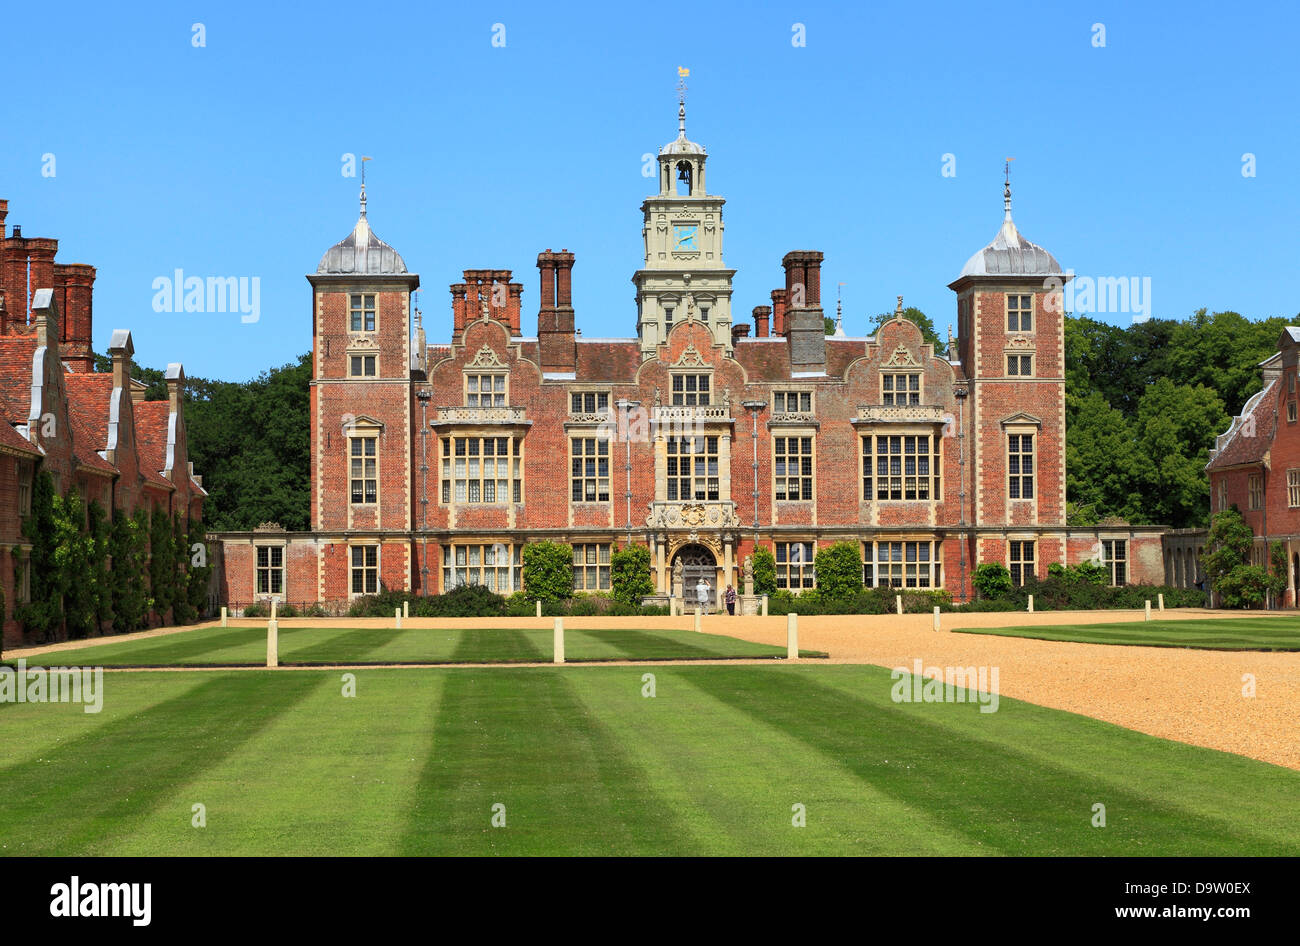 Blickling Hall, Norfolk, Inglaterra, siglo xvii, mansión jacobea, casa solariega inglesa hogares Foto de stock